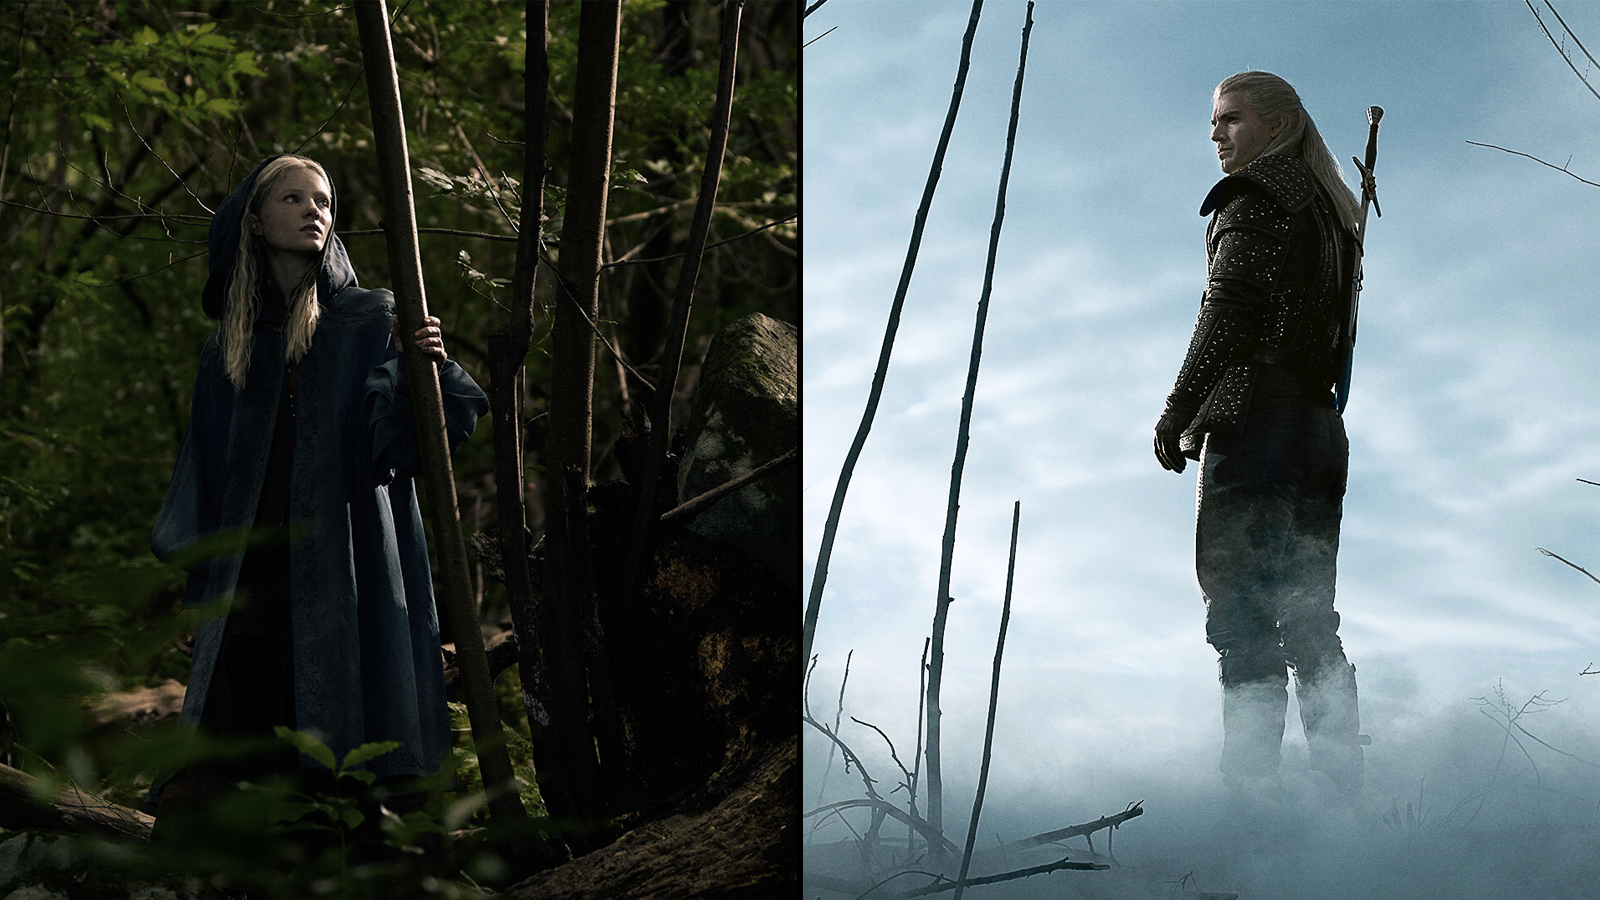 Hai nhân vật từ chương trình trong các bức ảnh tĩnh riêng biệt với nó;  một trong một khu rừng, một trong một khu vực mù sương